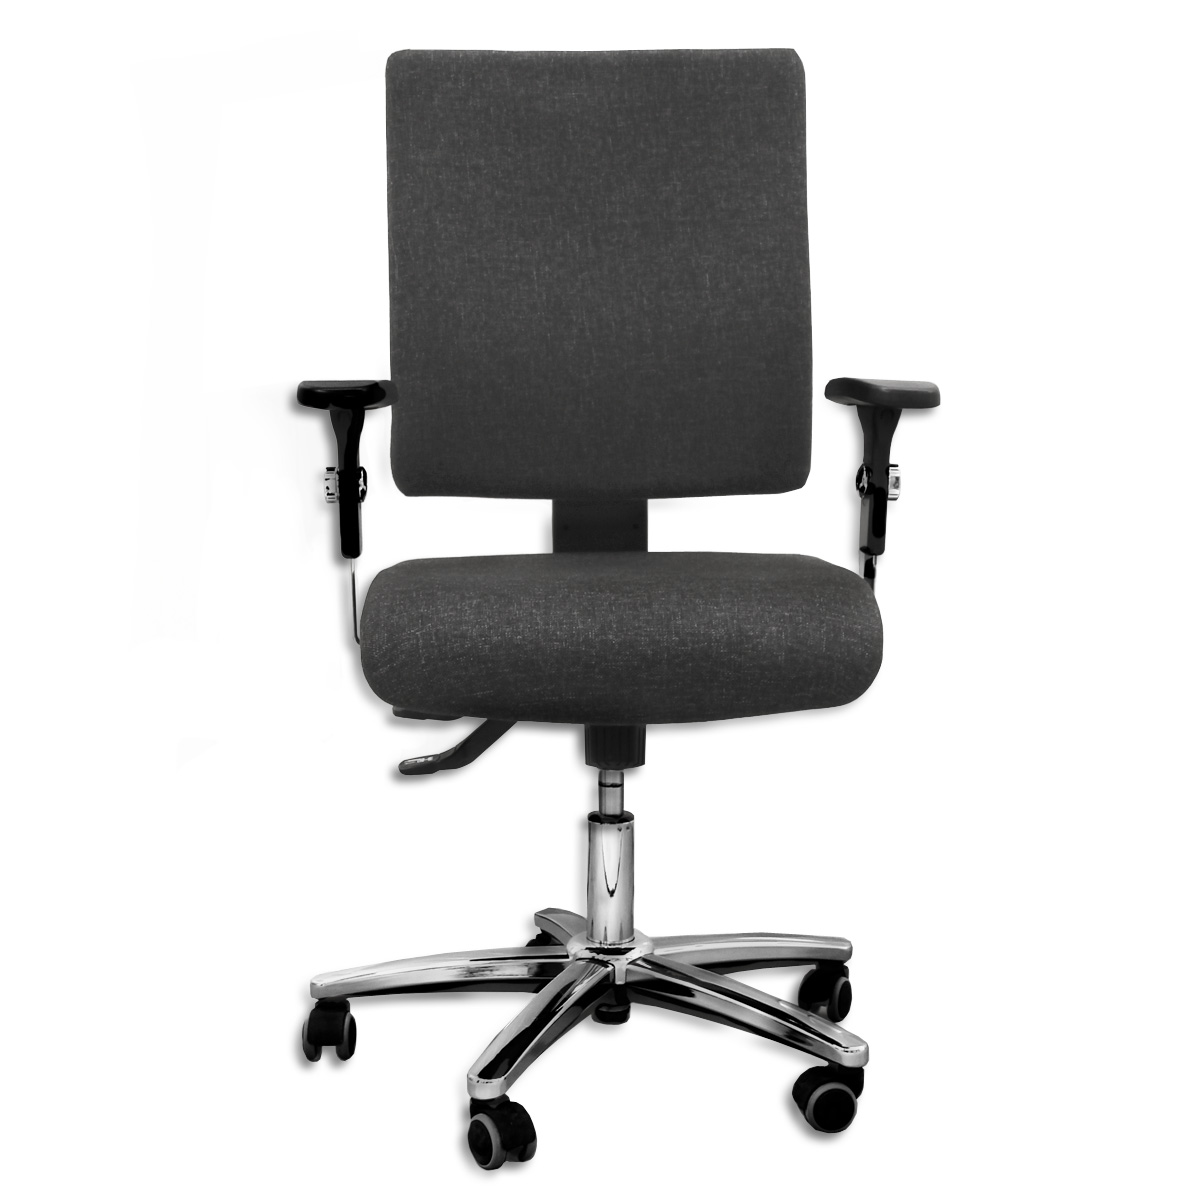 Hochwertiger Büro-Drehstuhl "Comfort" inkl. Armlehnen